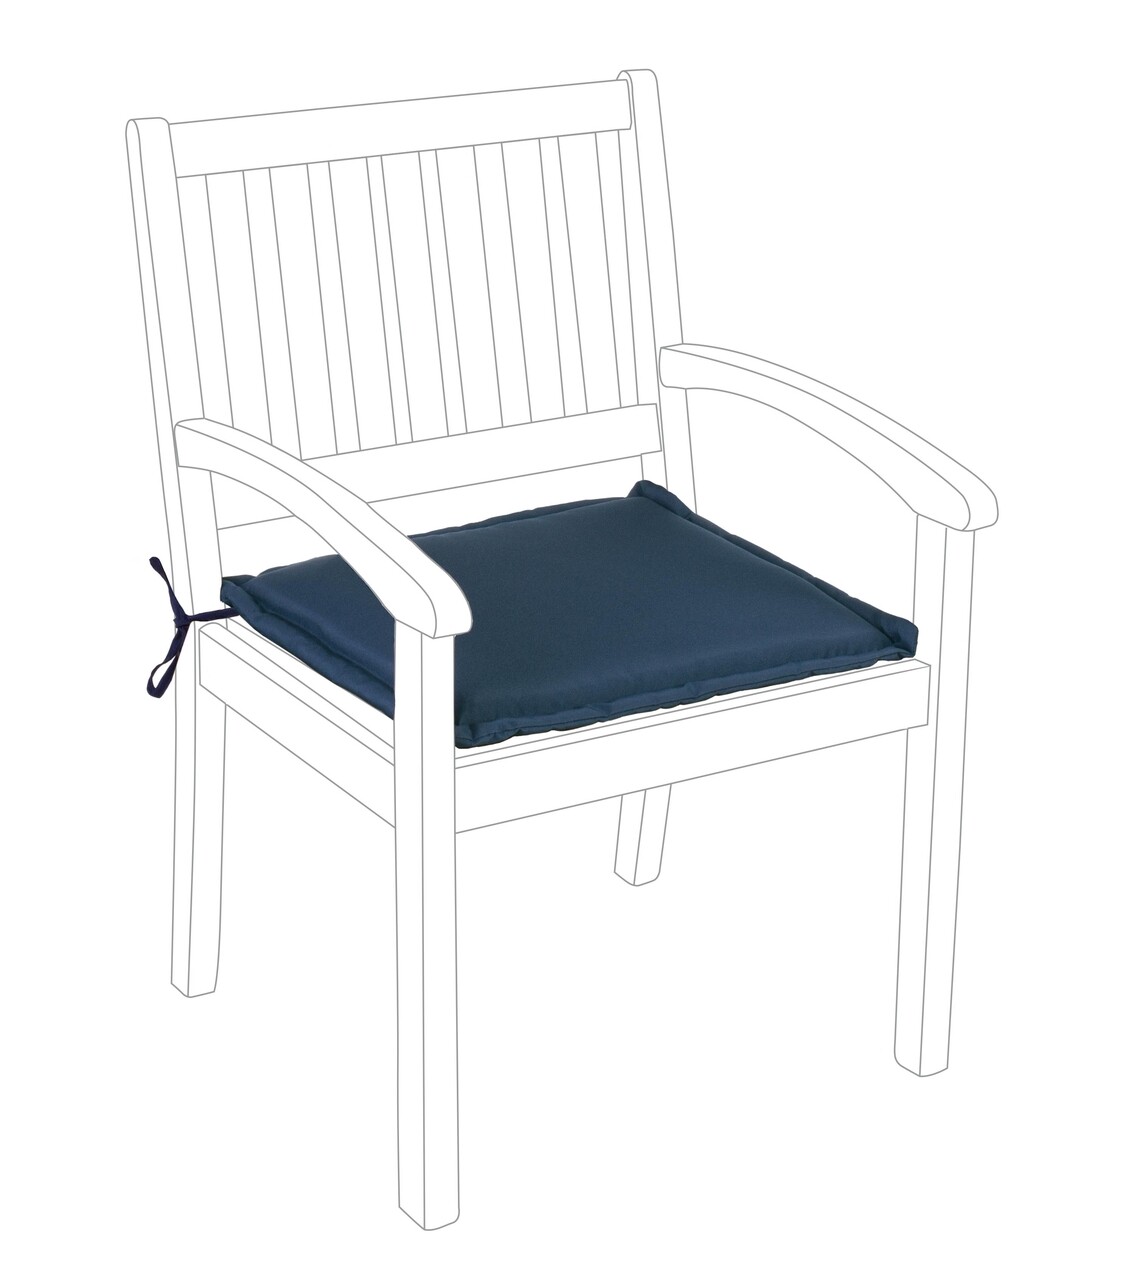 Poly180 Párna kerti székhez, Bizzotto, 49 x 52 cm, vízhatlan poliészter, kék